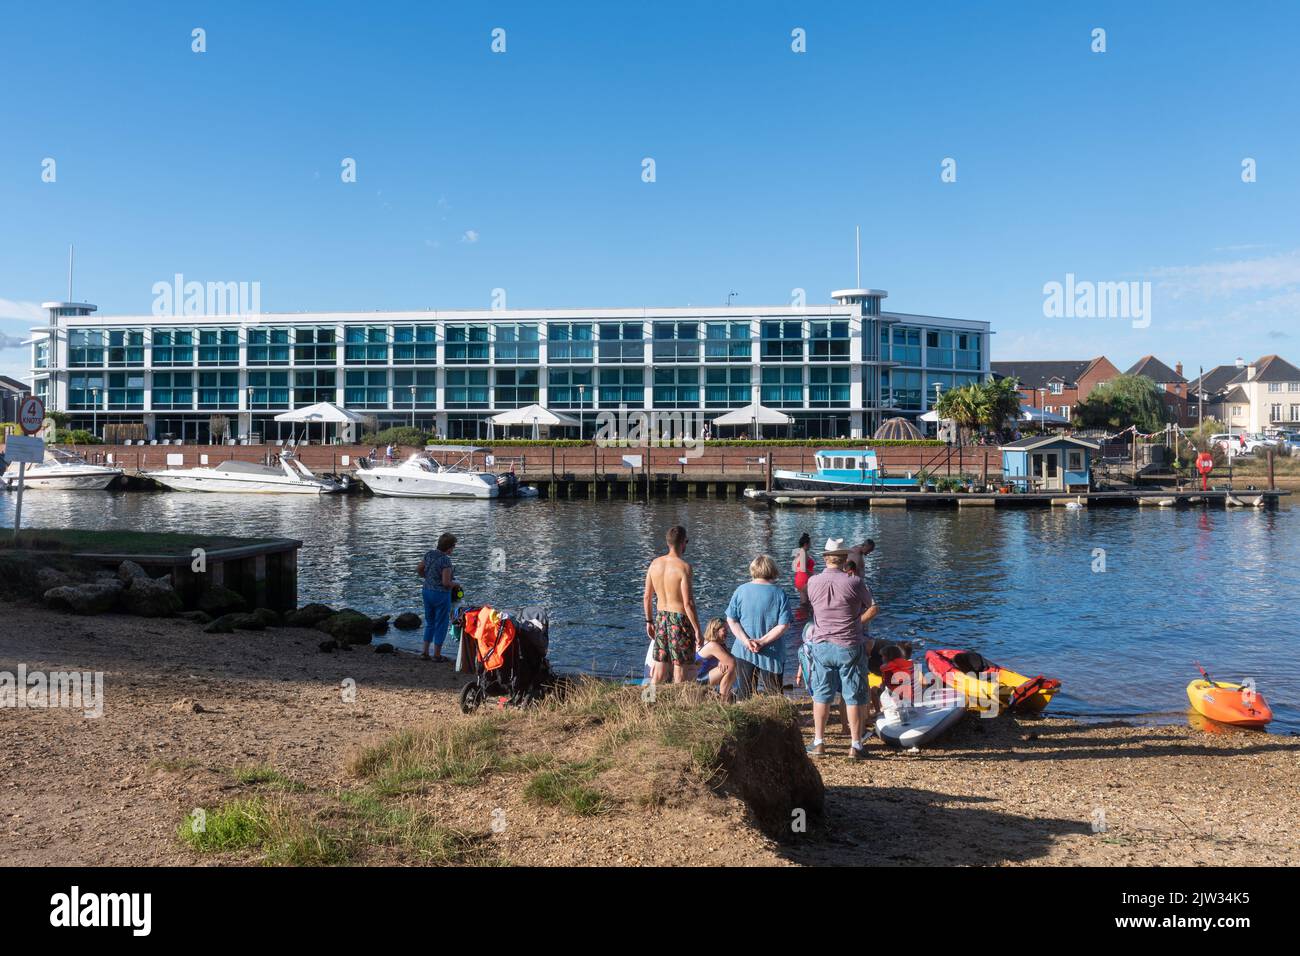 Menschen in den Sommerferien am Fluss Stour mit dem Captain's Club Hotel im Hintergrund, Christchurch, Dorset, England, Großbritannien Stockfoto